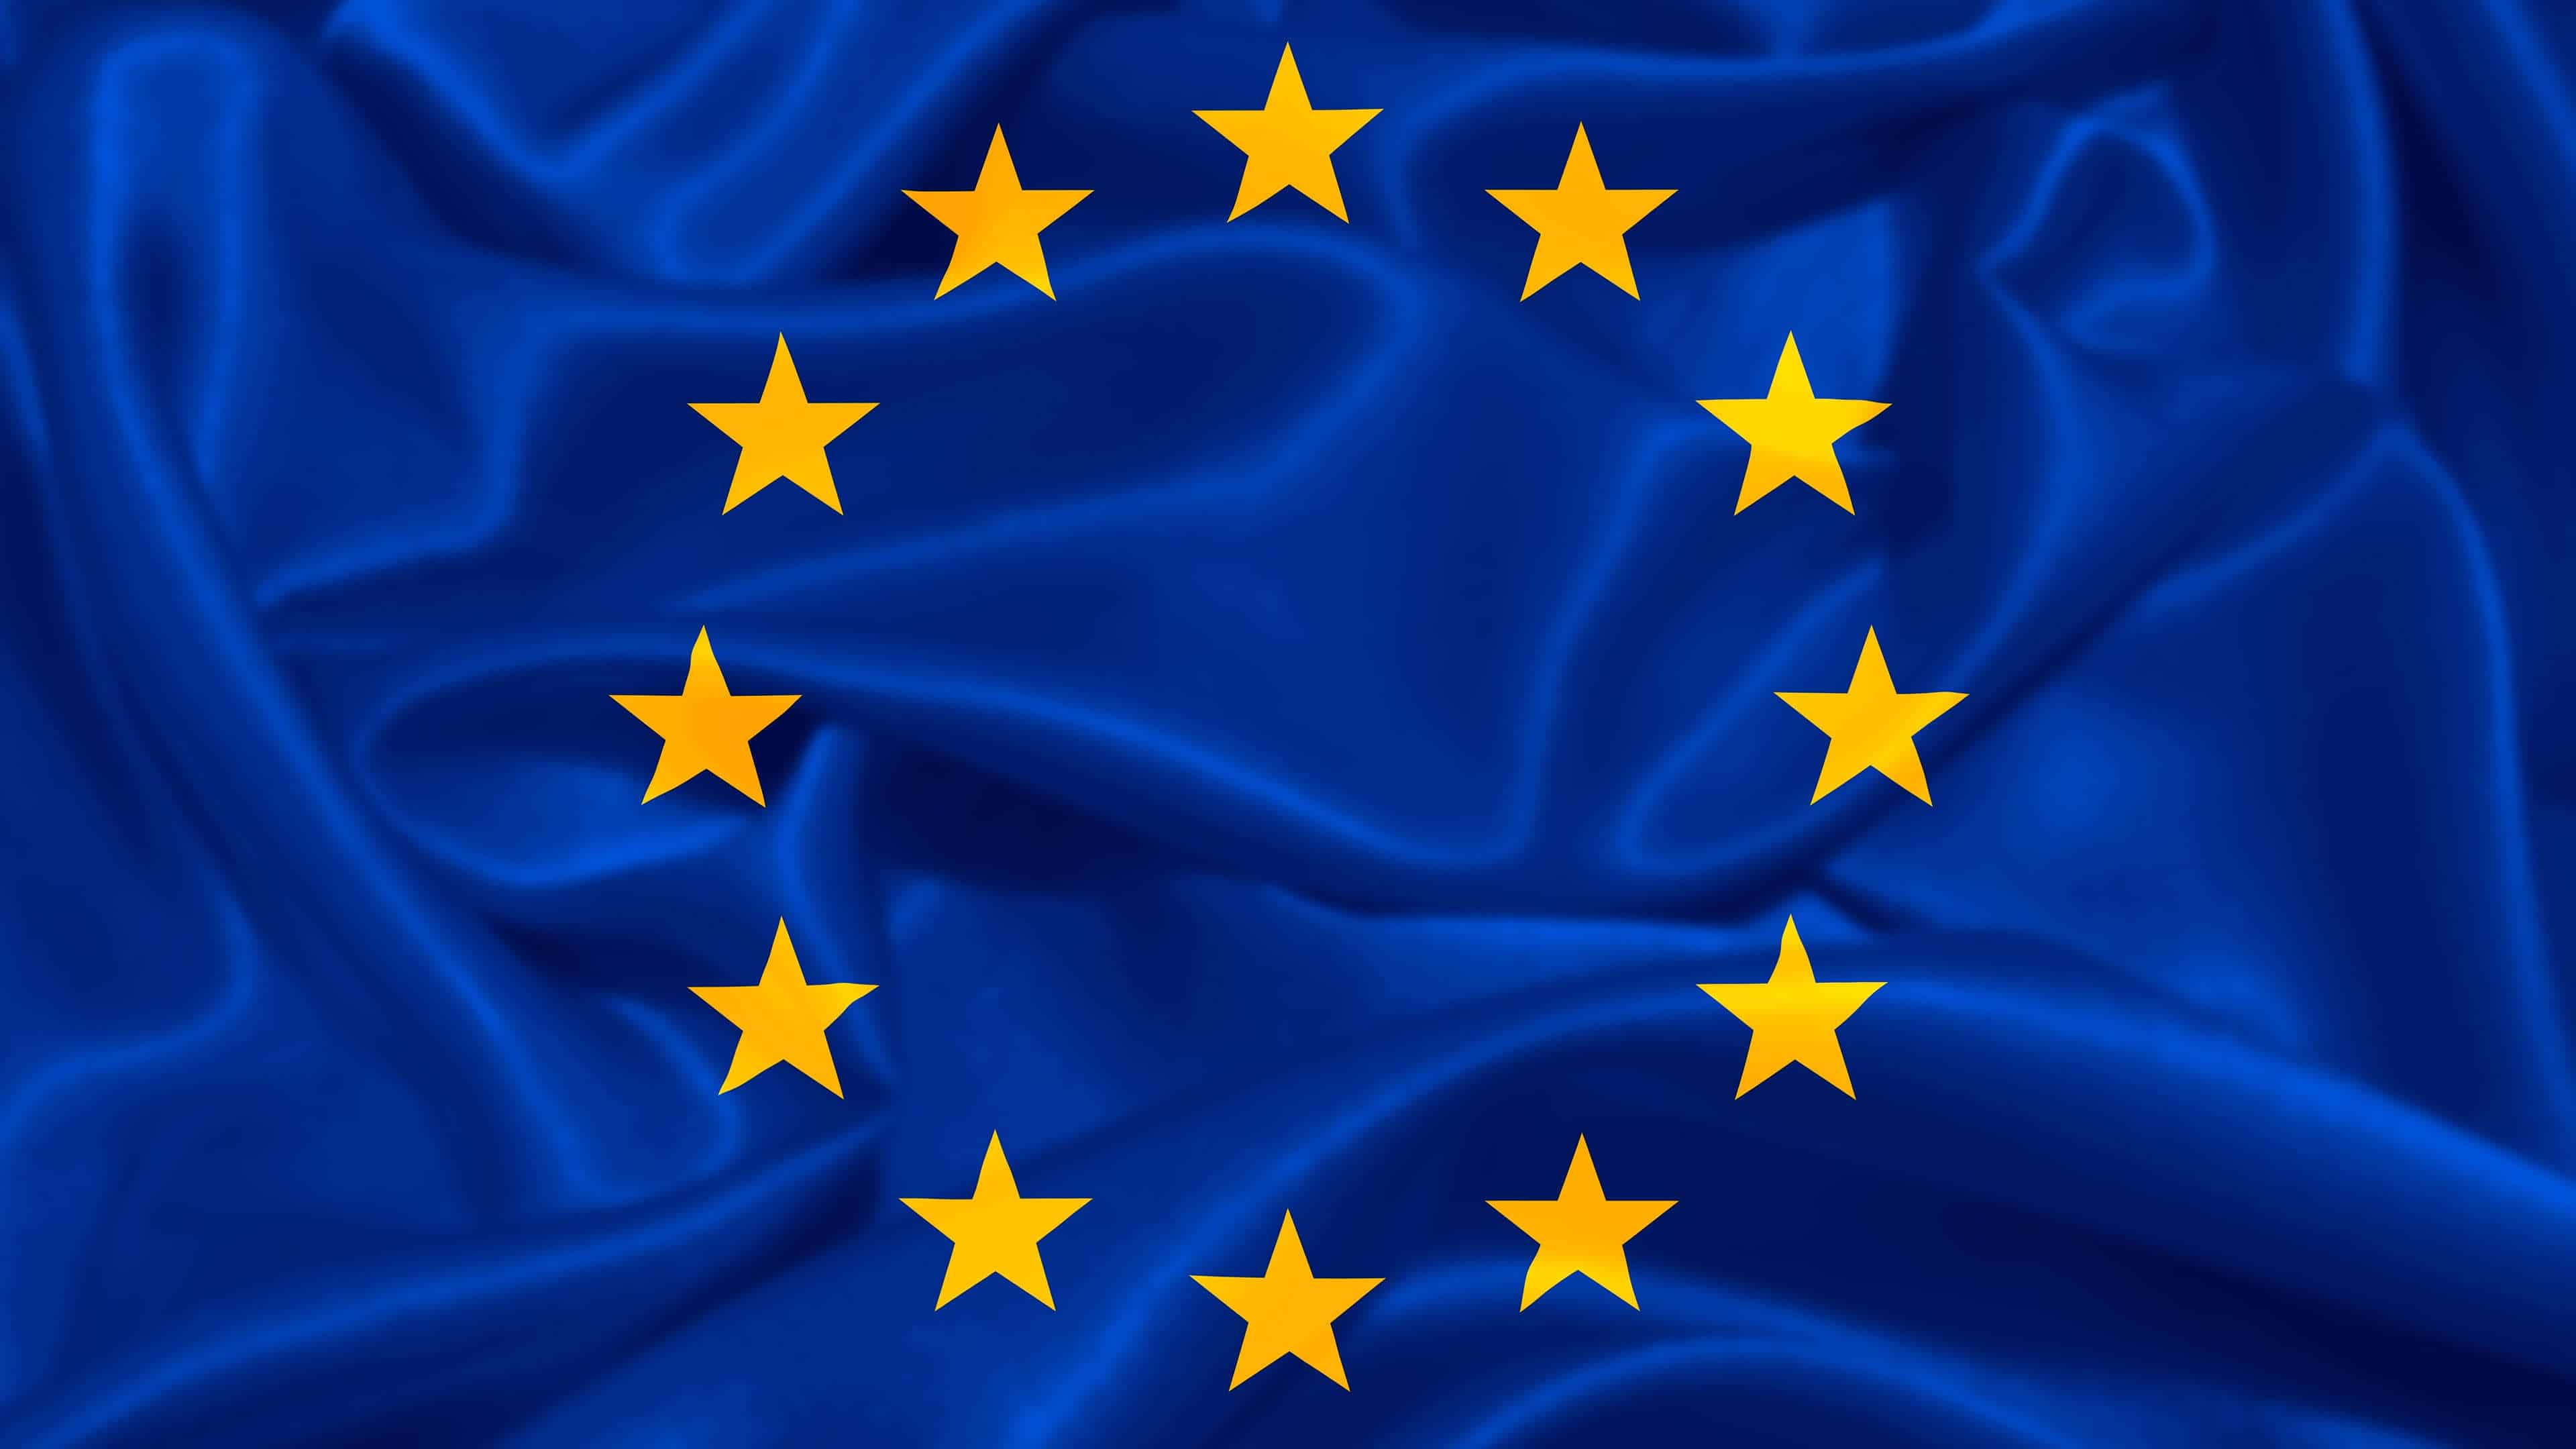 Прапор Європейського Союзу UHD 4K шпалери | Pixelz